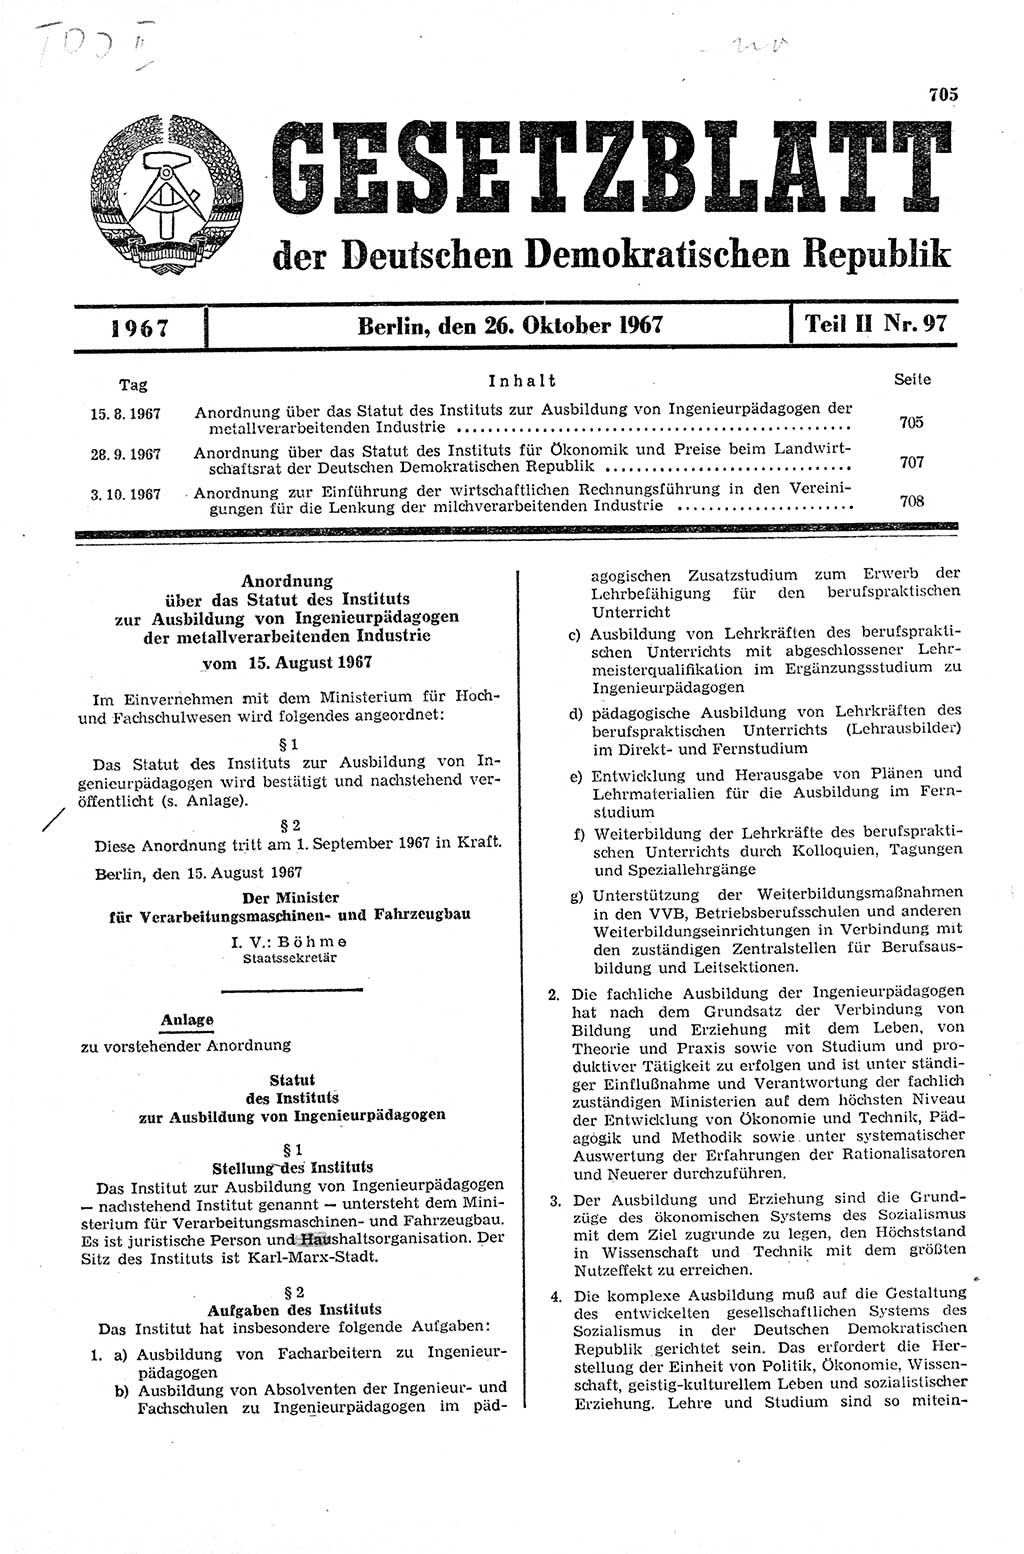 Gesetzblatt (GBl.) der Deutschen Demokratischen Republik (DDR) Teil ⅠⅠ 1967, Seite 705 (GBl. DDR ⅠⅠ 1967, S. 705)